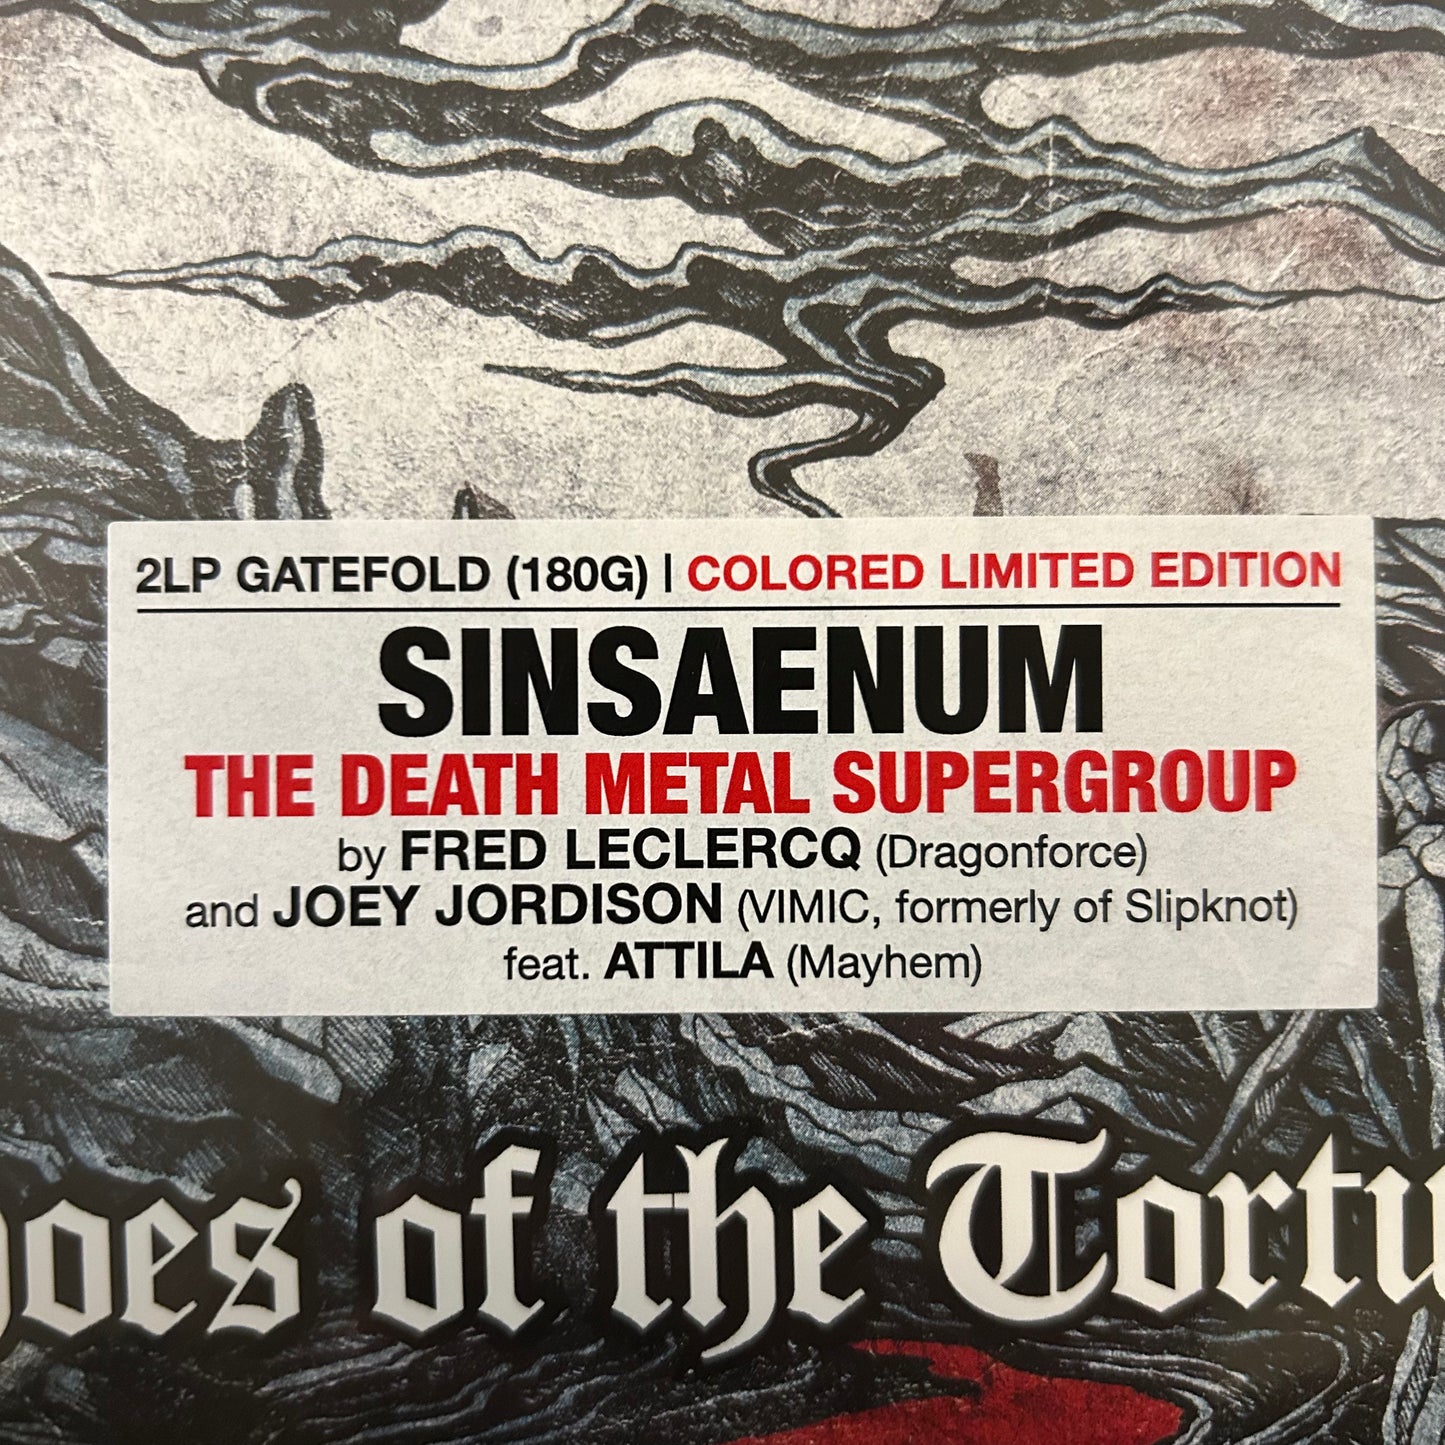 Sinsaenum - ECHOES OF THE TORTURED LP